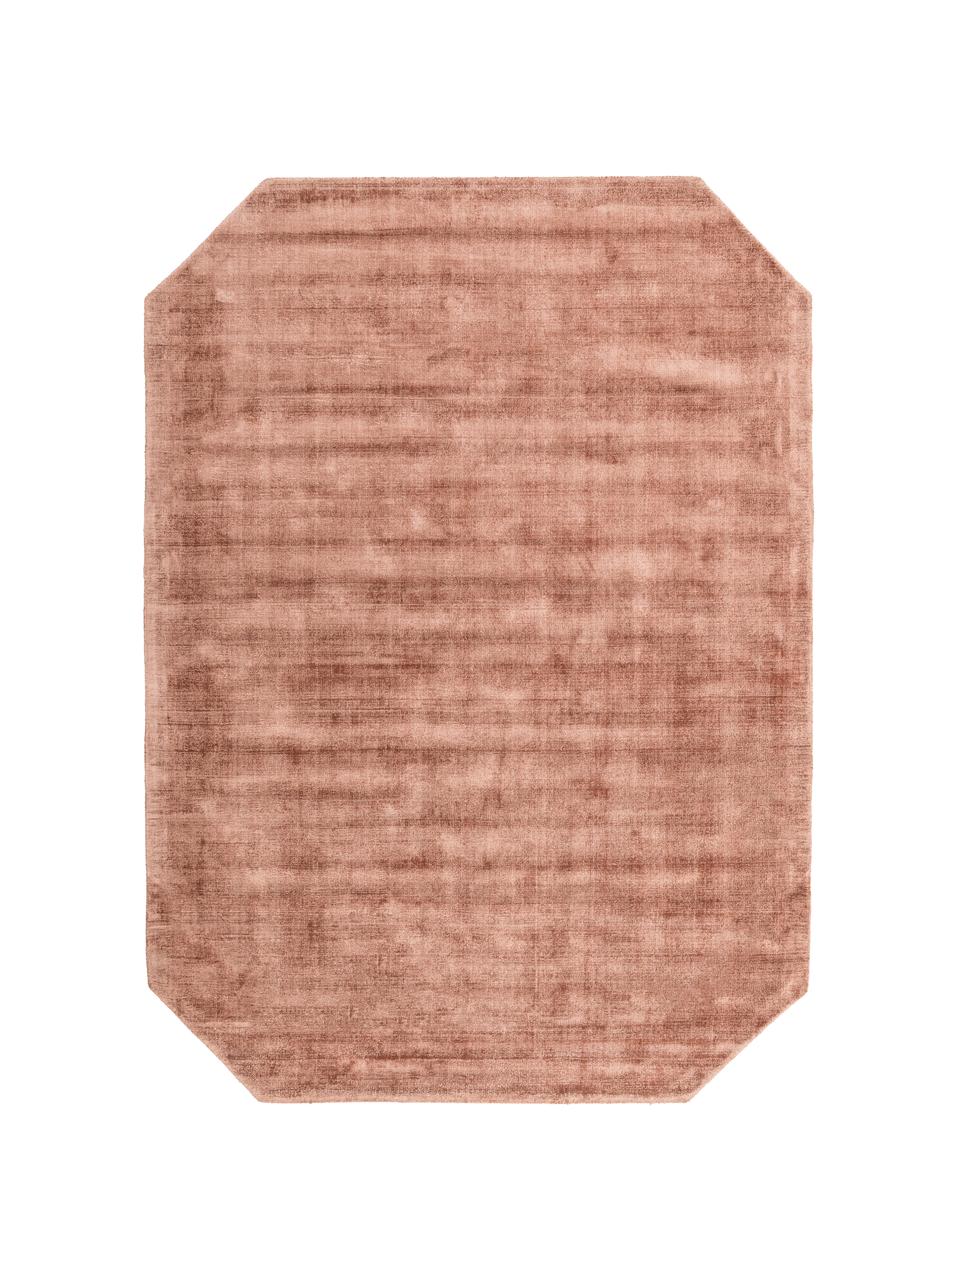 Viscose vloerkleed Jane Diamond, Bovenzijde: 100% viscose, Onderzijde: 100% katoen, Terracottakleurig, 160 x 230 cm